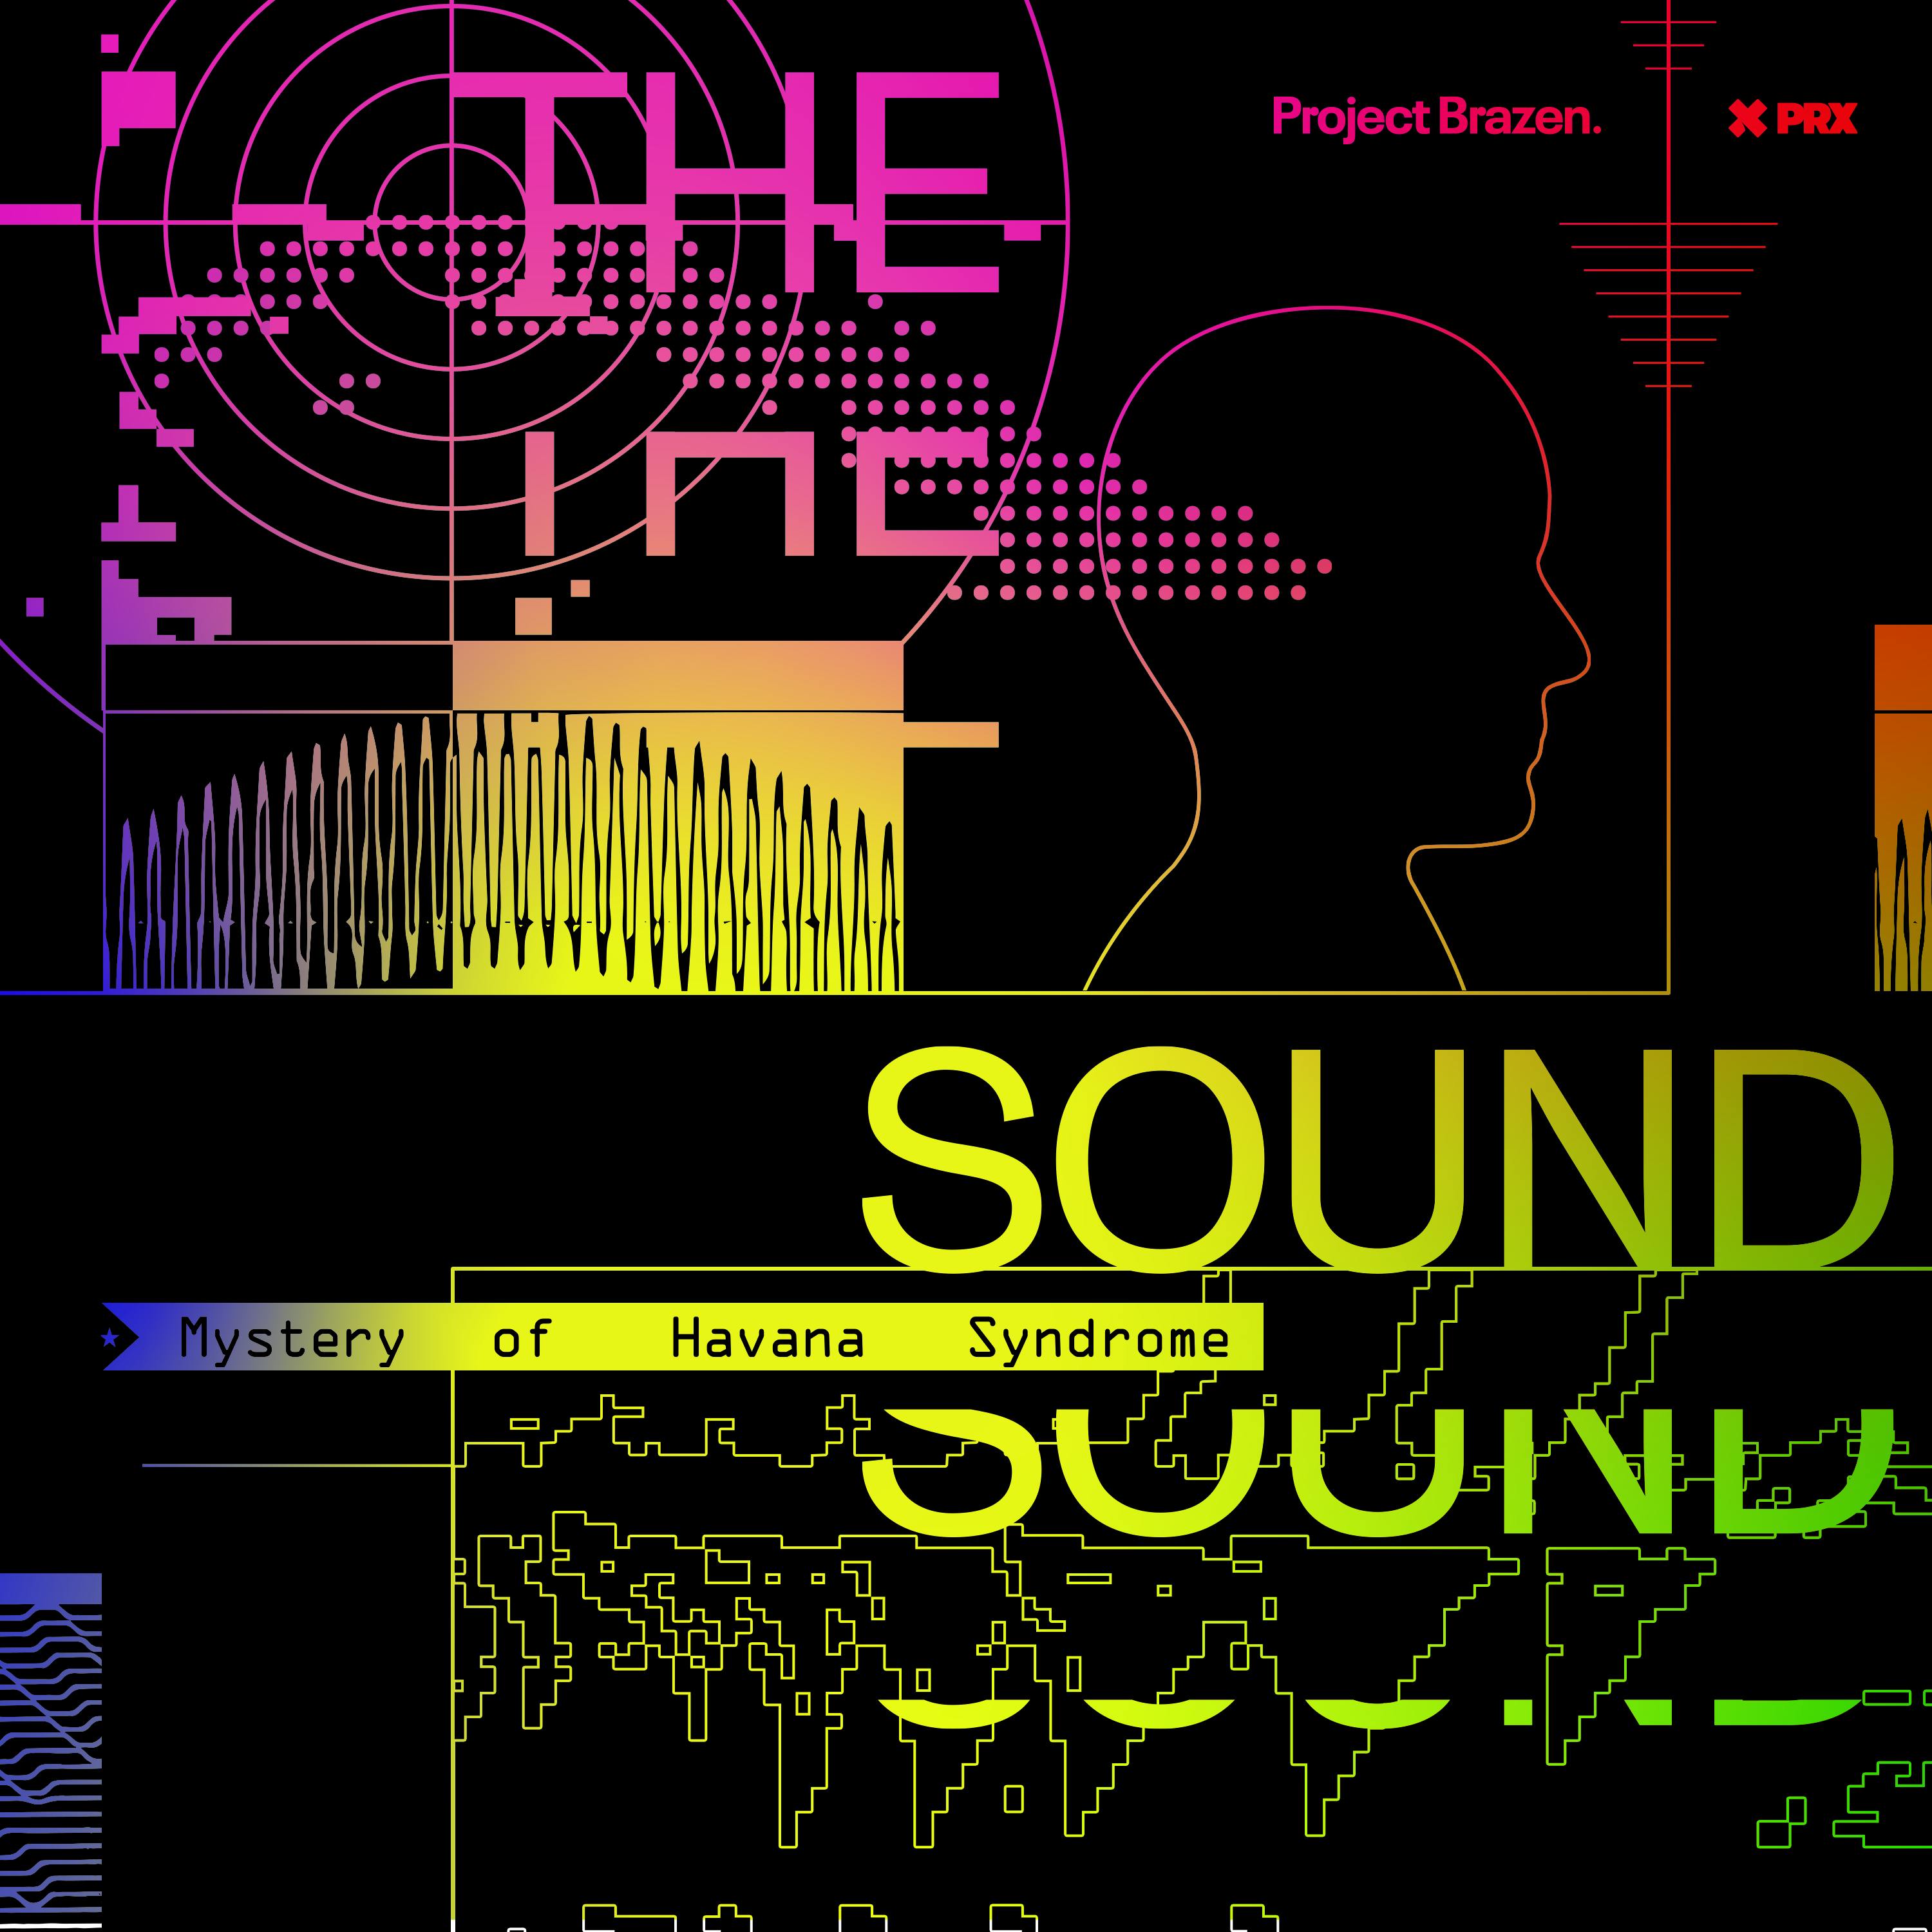 Brazen+: The Sound: Mystery of Havana Syndrome podcast tile